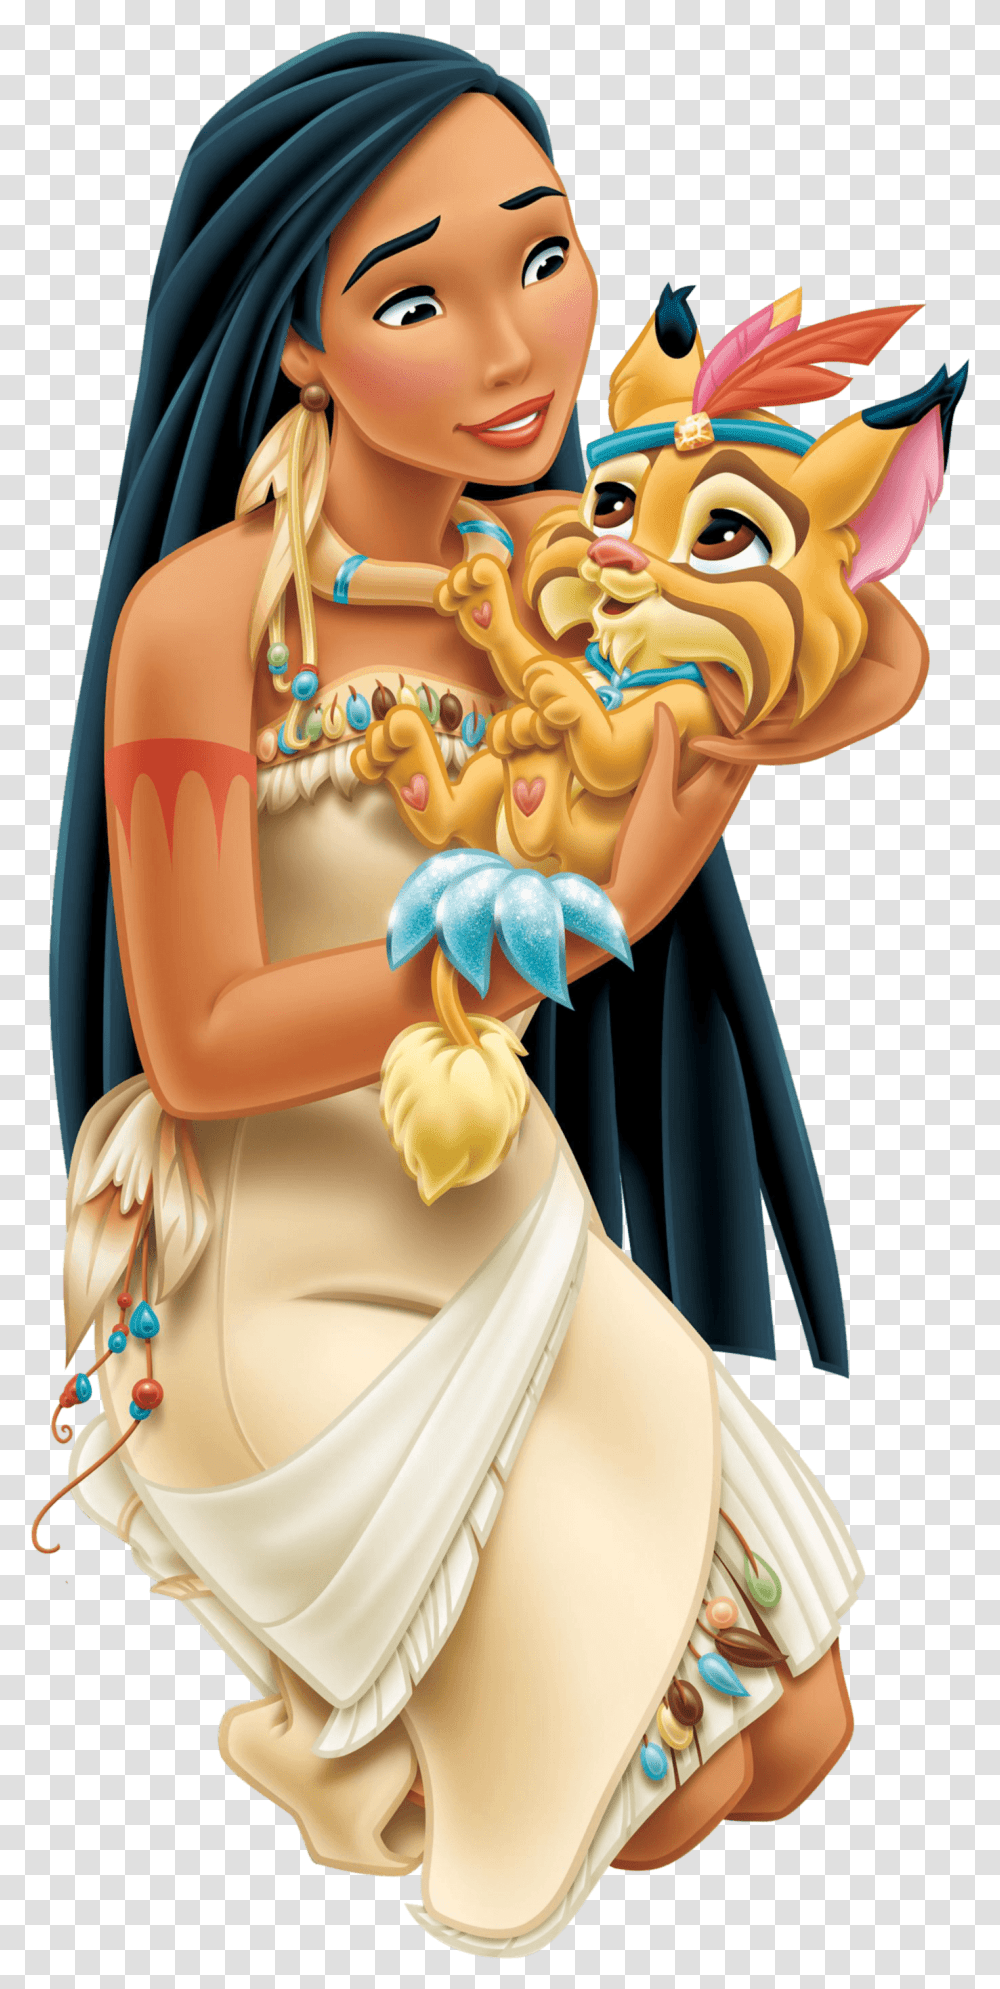 Disney Princess Pocahontas, Doll, Toy, Figurine Transparent Png